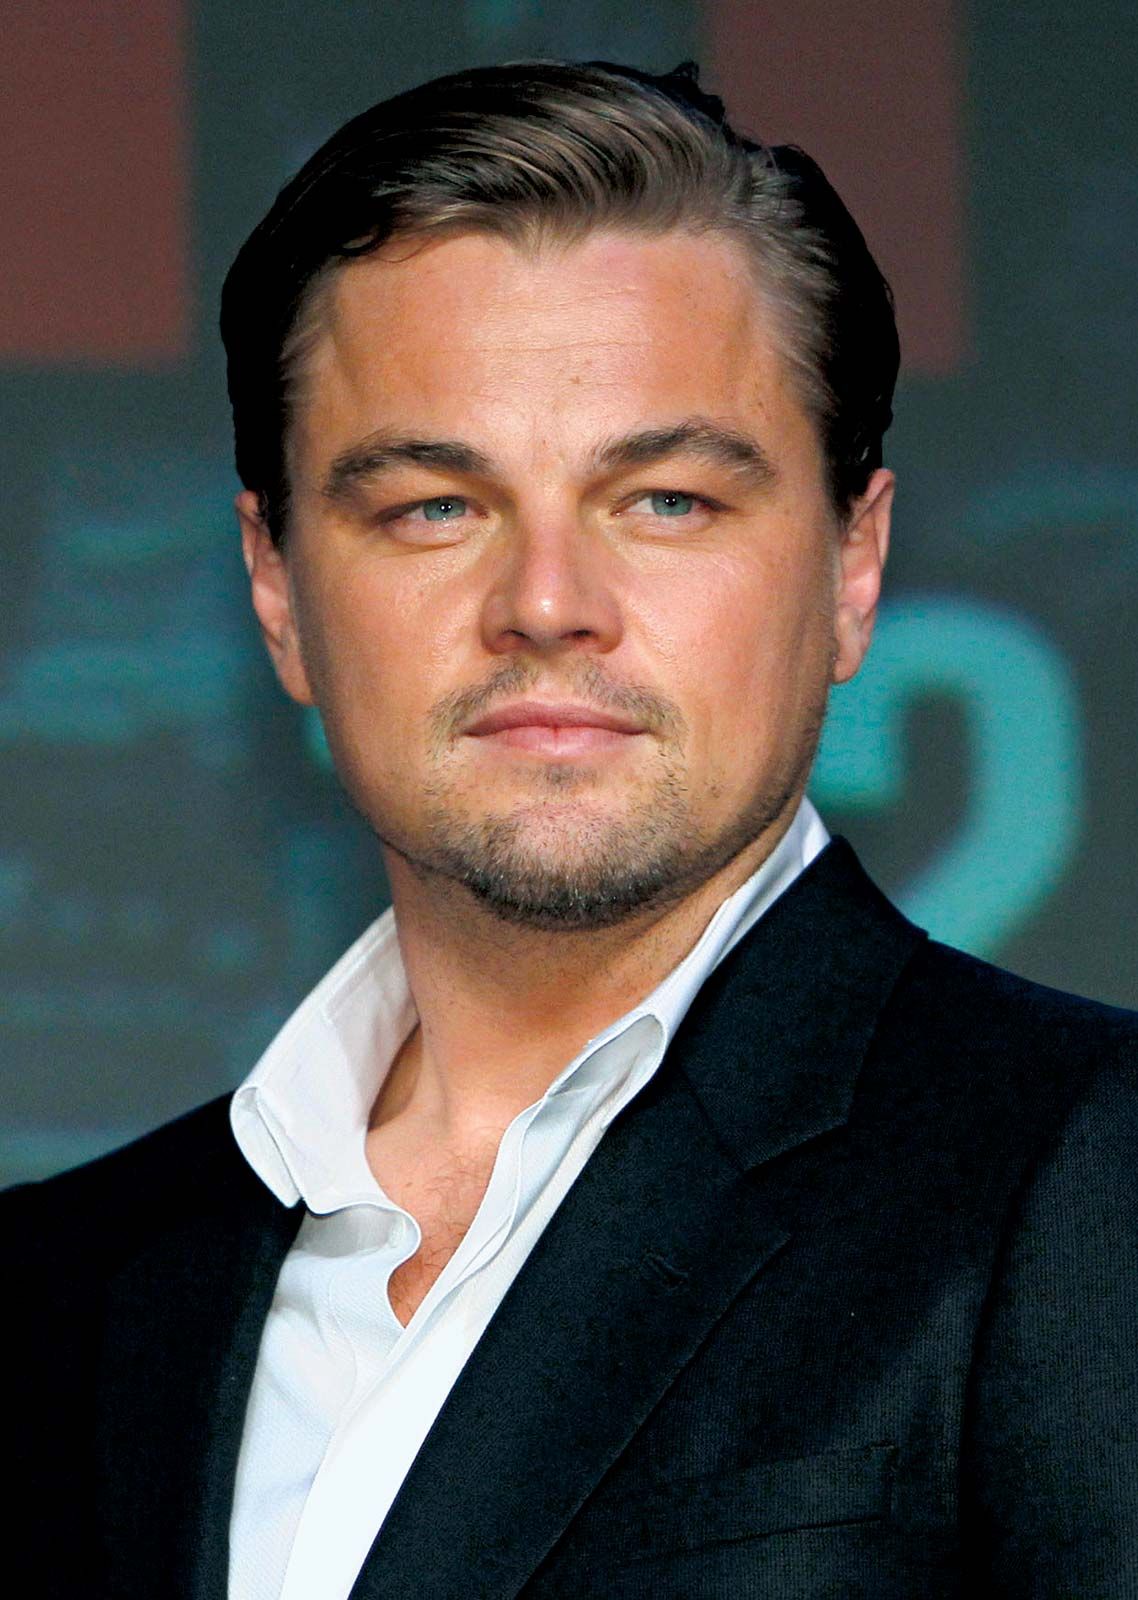 Leonardo-DiCaprio-2010.jpg